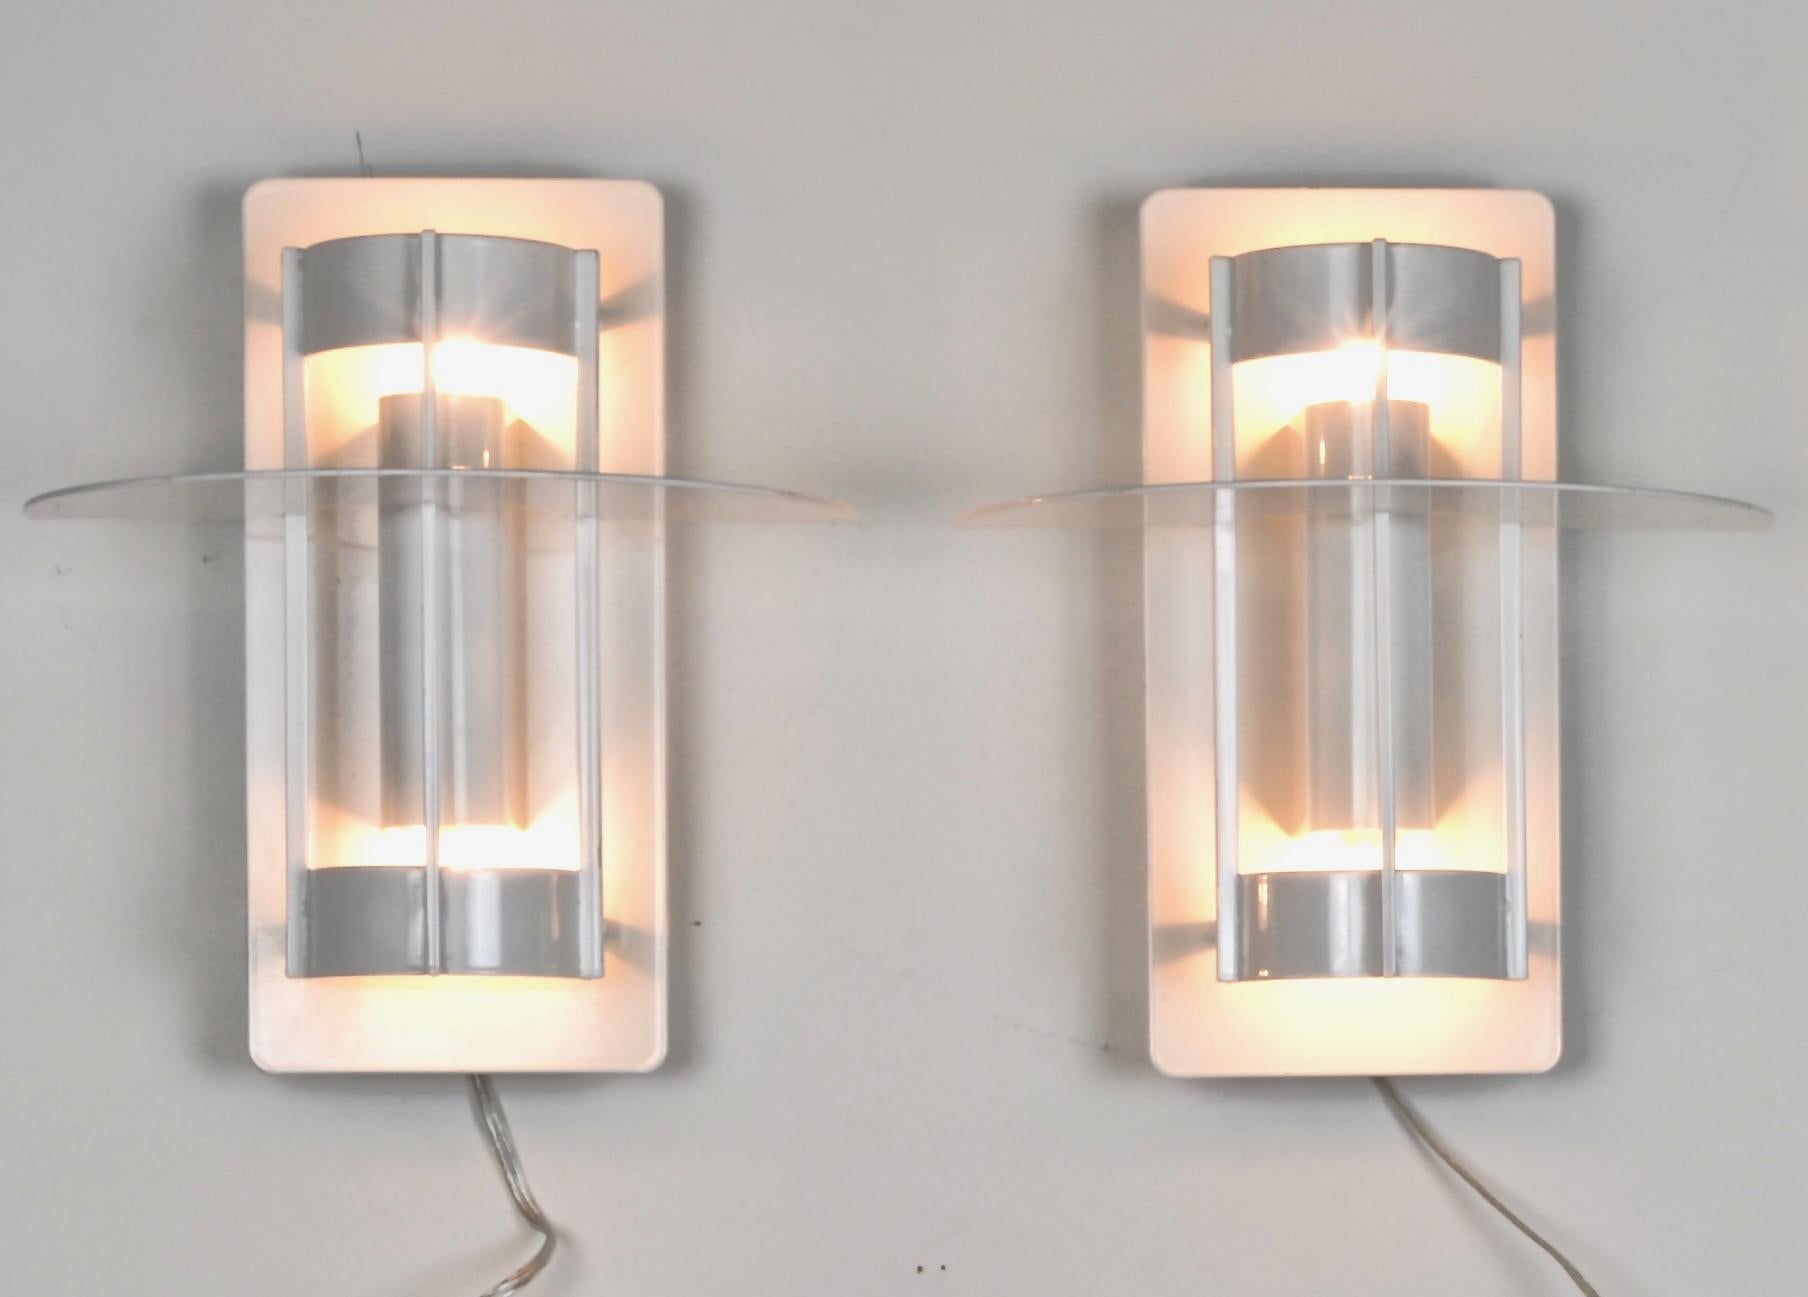 Ein Paar dieser modernen, klassischen Wandleuchten, entworfen von Louis Poulsen. Alle neu verkabelt, wobei die ursprünglichen Leuchtstoffröhren durch Glühbirnen ersetzt wurden. Einzelne Glühbirnen nach oben und unten gerichtet. Sehr schöne